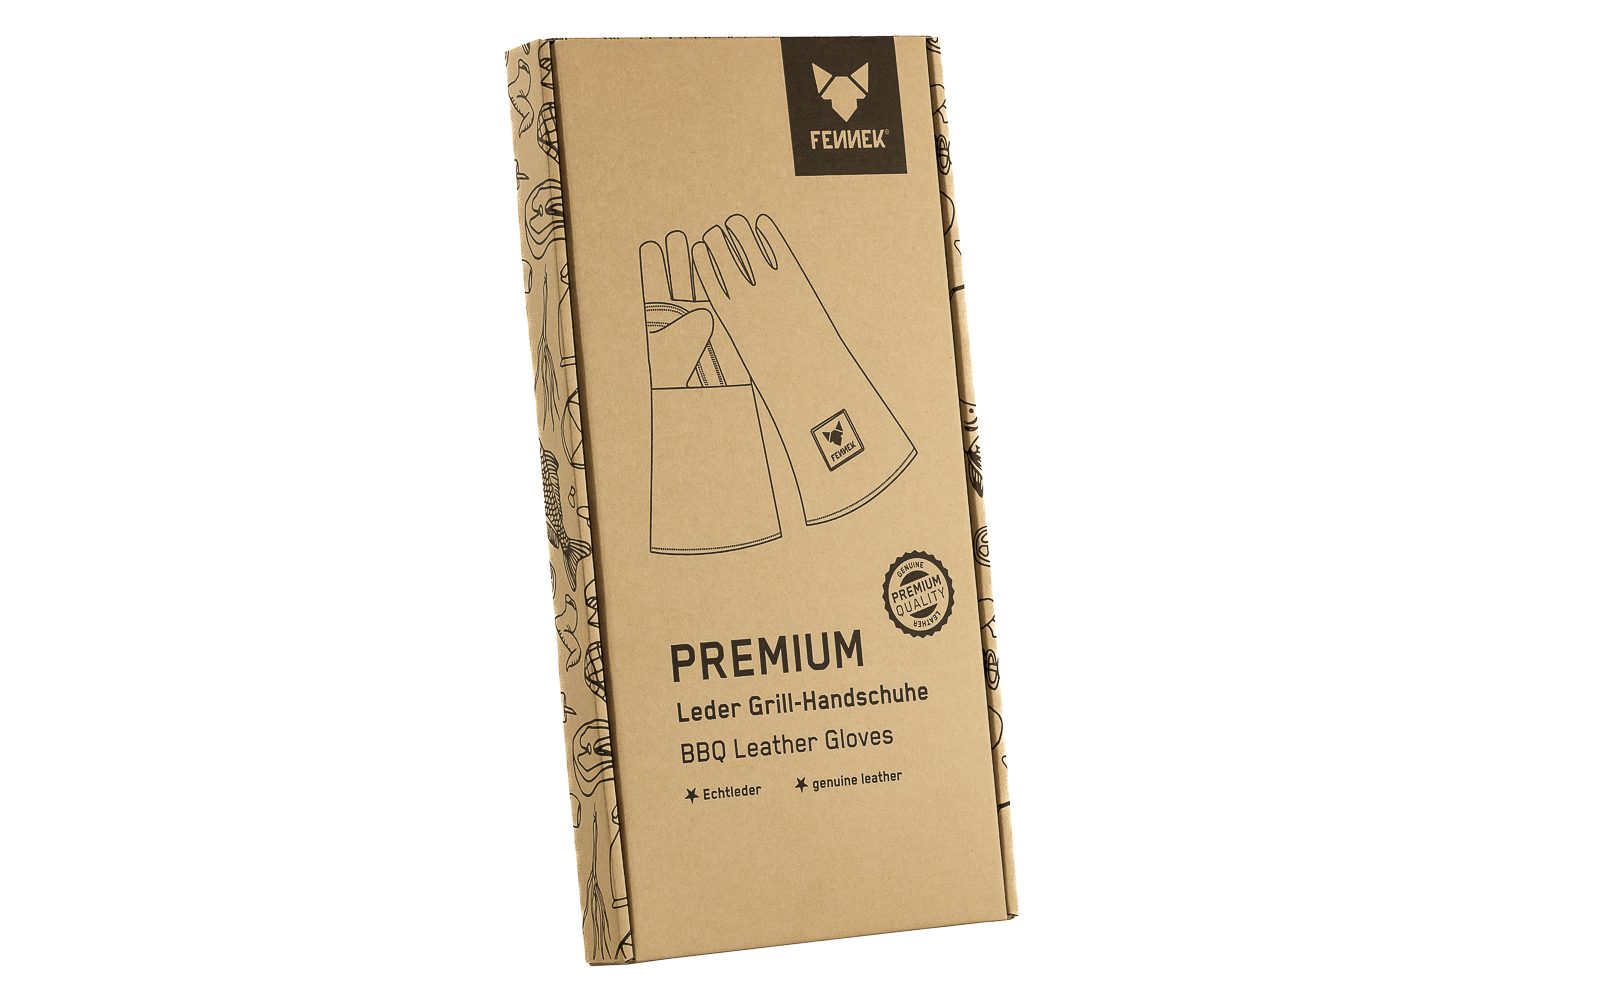 Produktverpackung bedruckter Karton mit Abbildung der Leder Grill-Handschuhe und FENNEK-Logo.